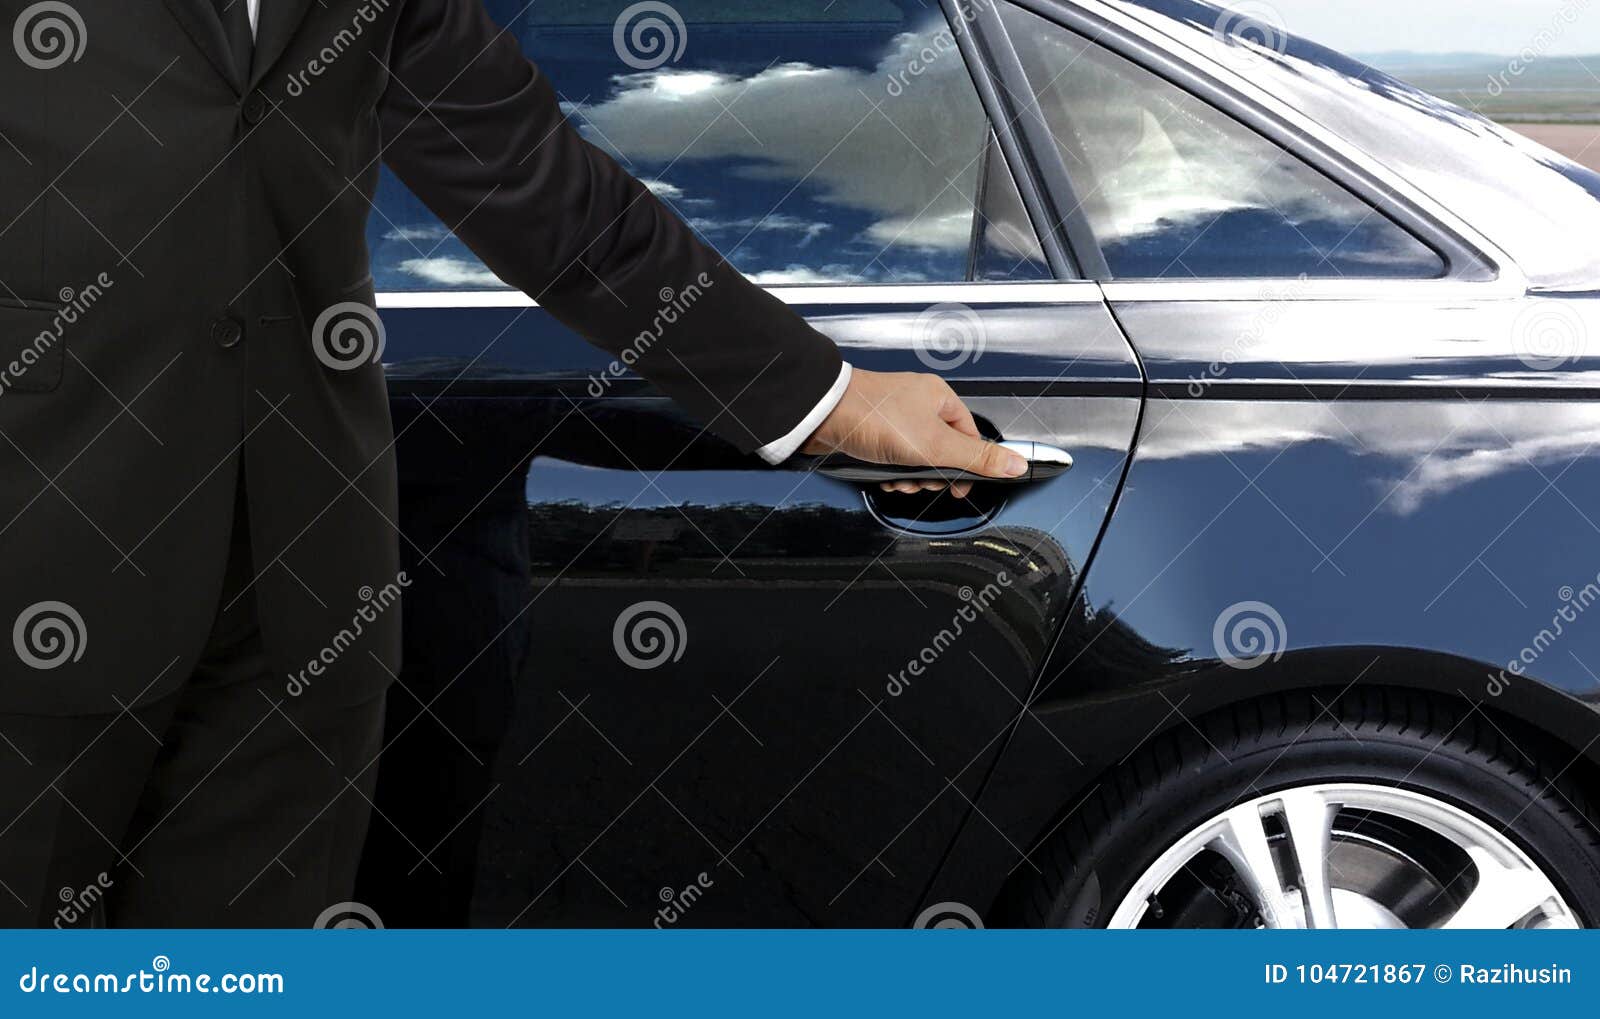 driver hand opening car door